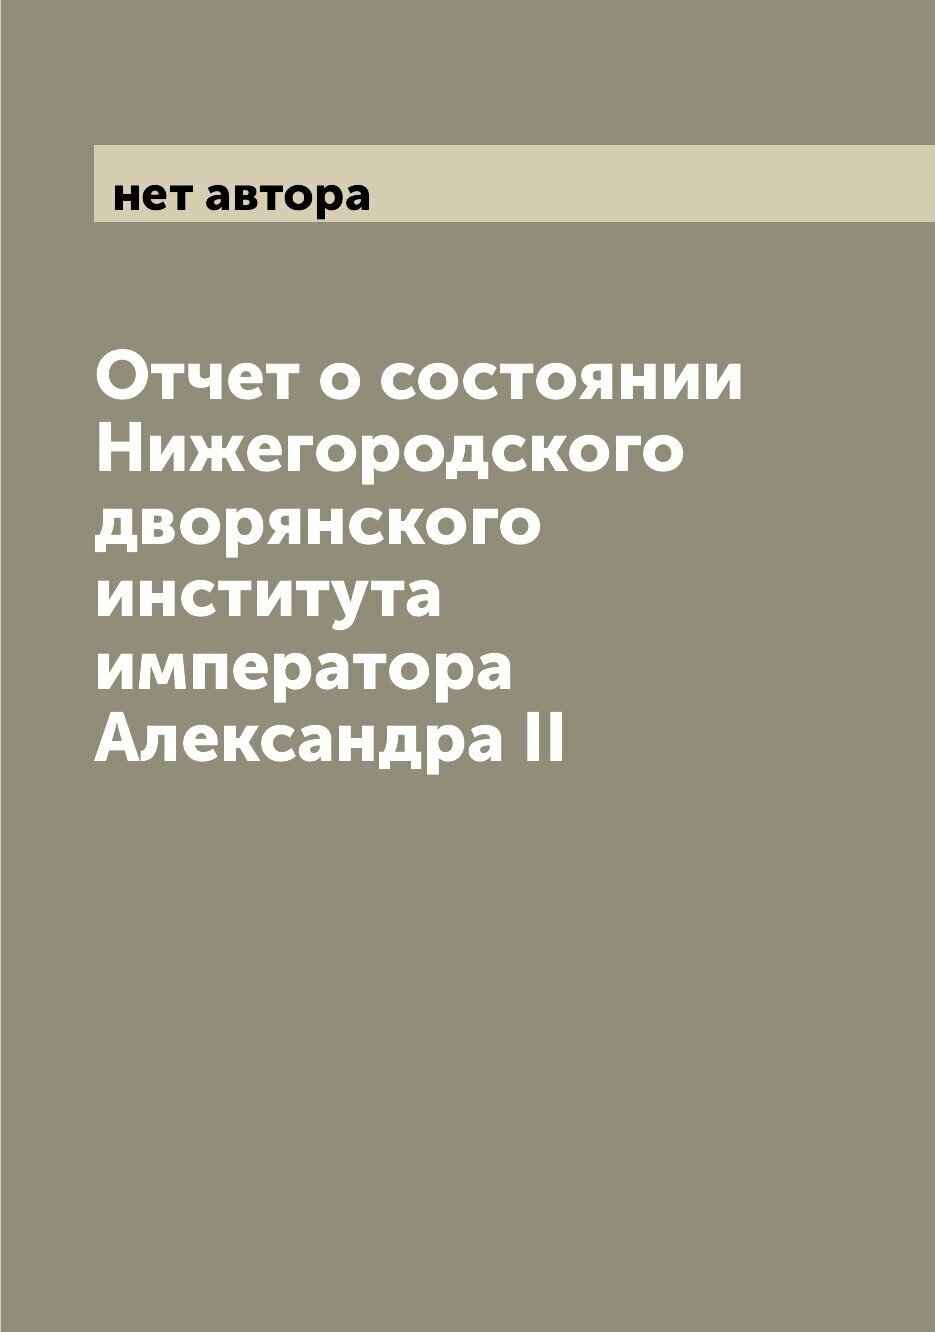 Отчет о состоянии Нижегородского дворянского института императора Александра II